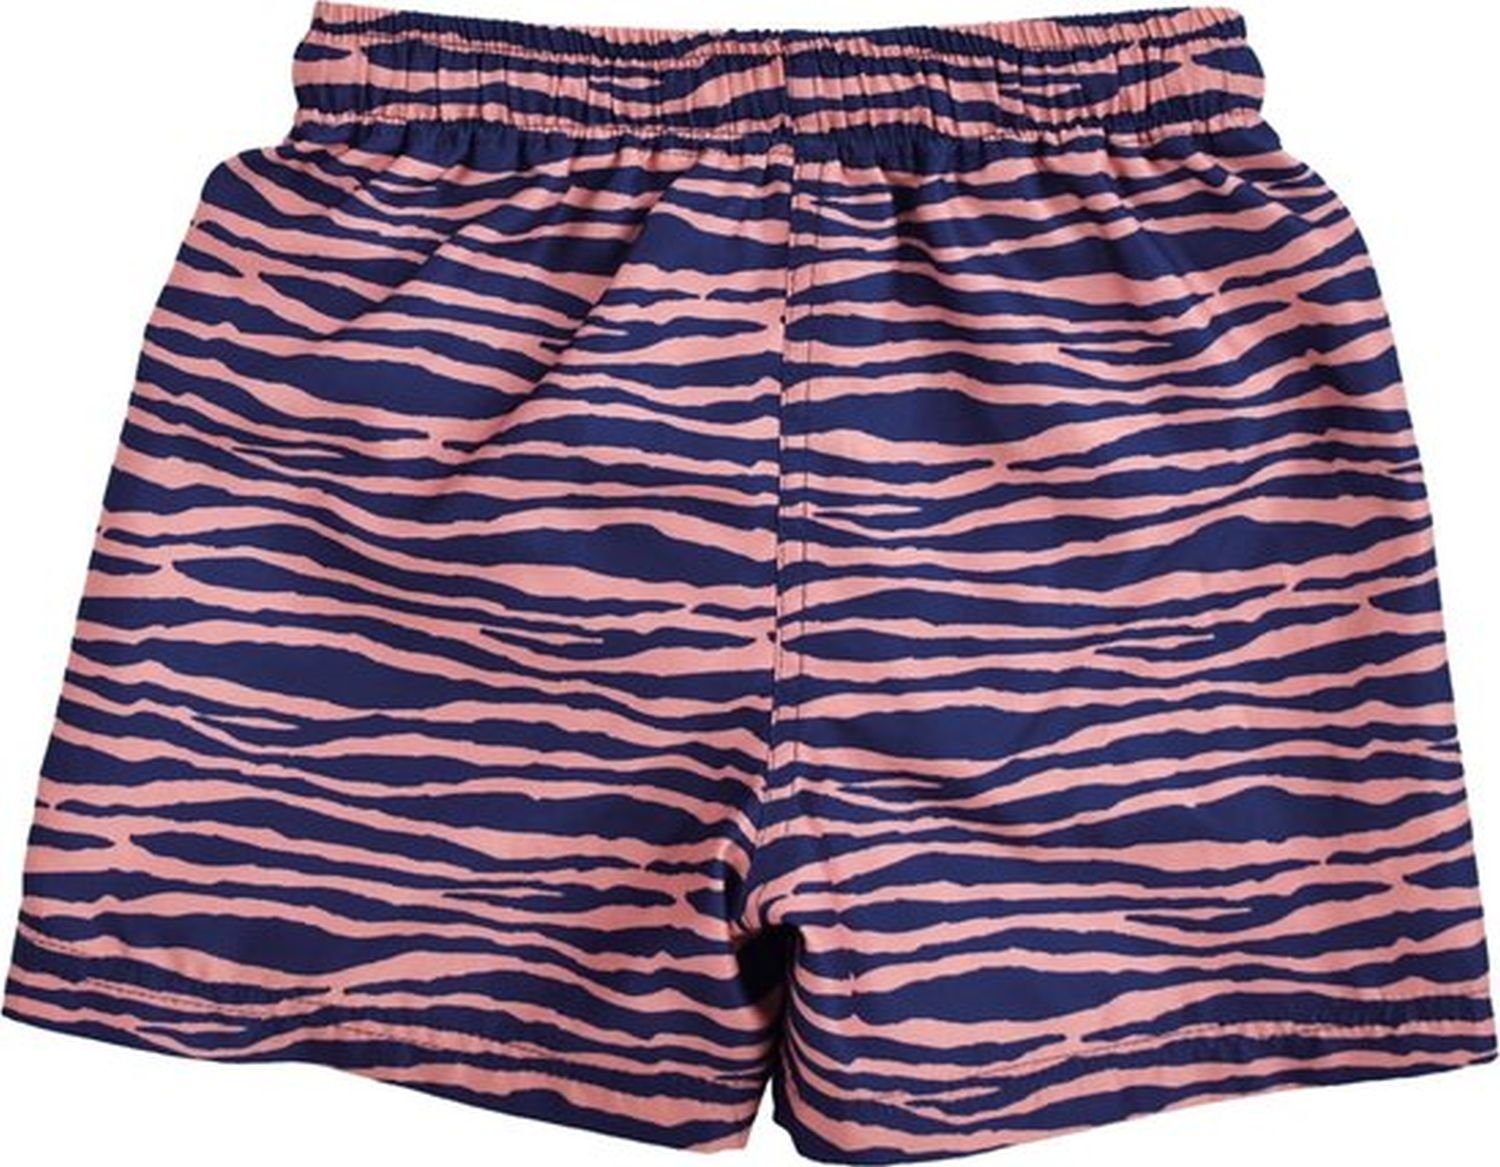 80% / Schwimmboxershorts, Essentials Swim EL Essentials Swim PL für Jungen Zebra Muste, 20% blau/orange Badeponcho